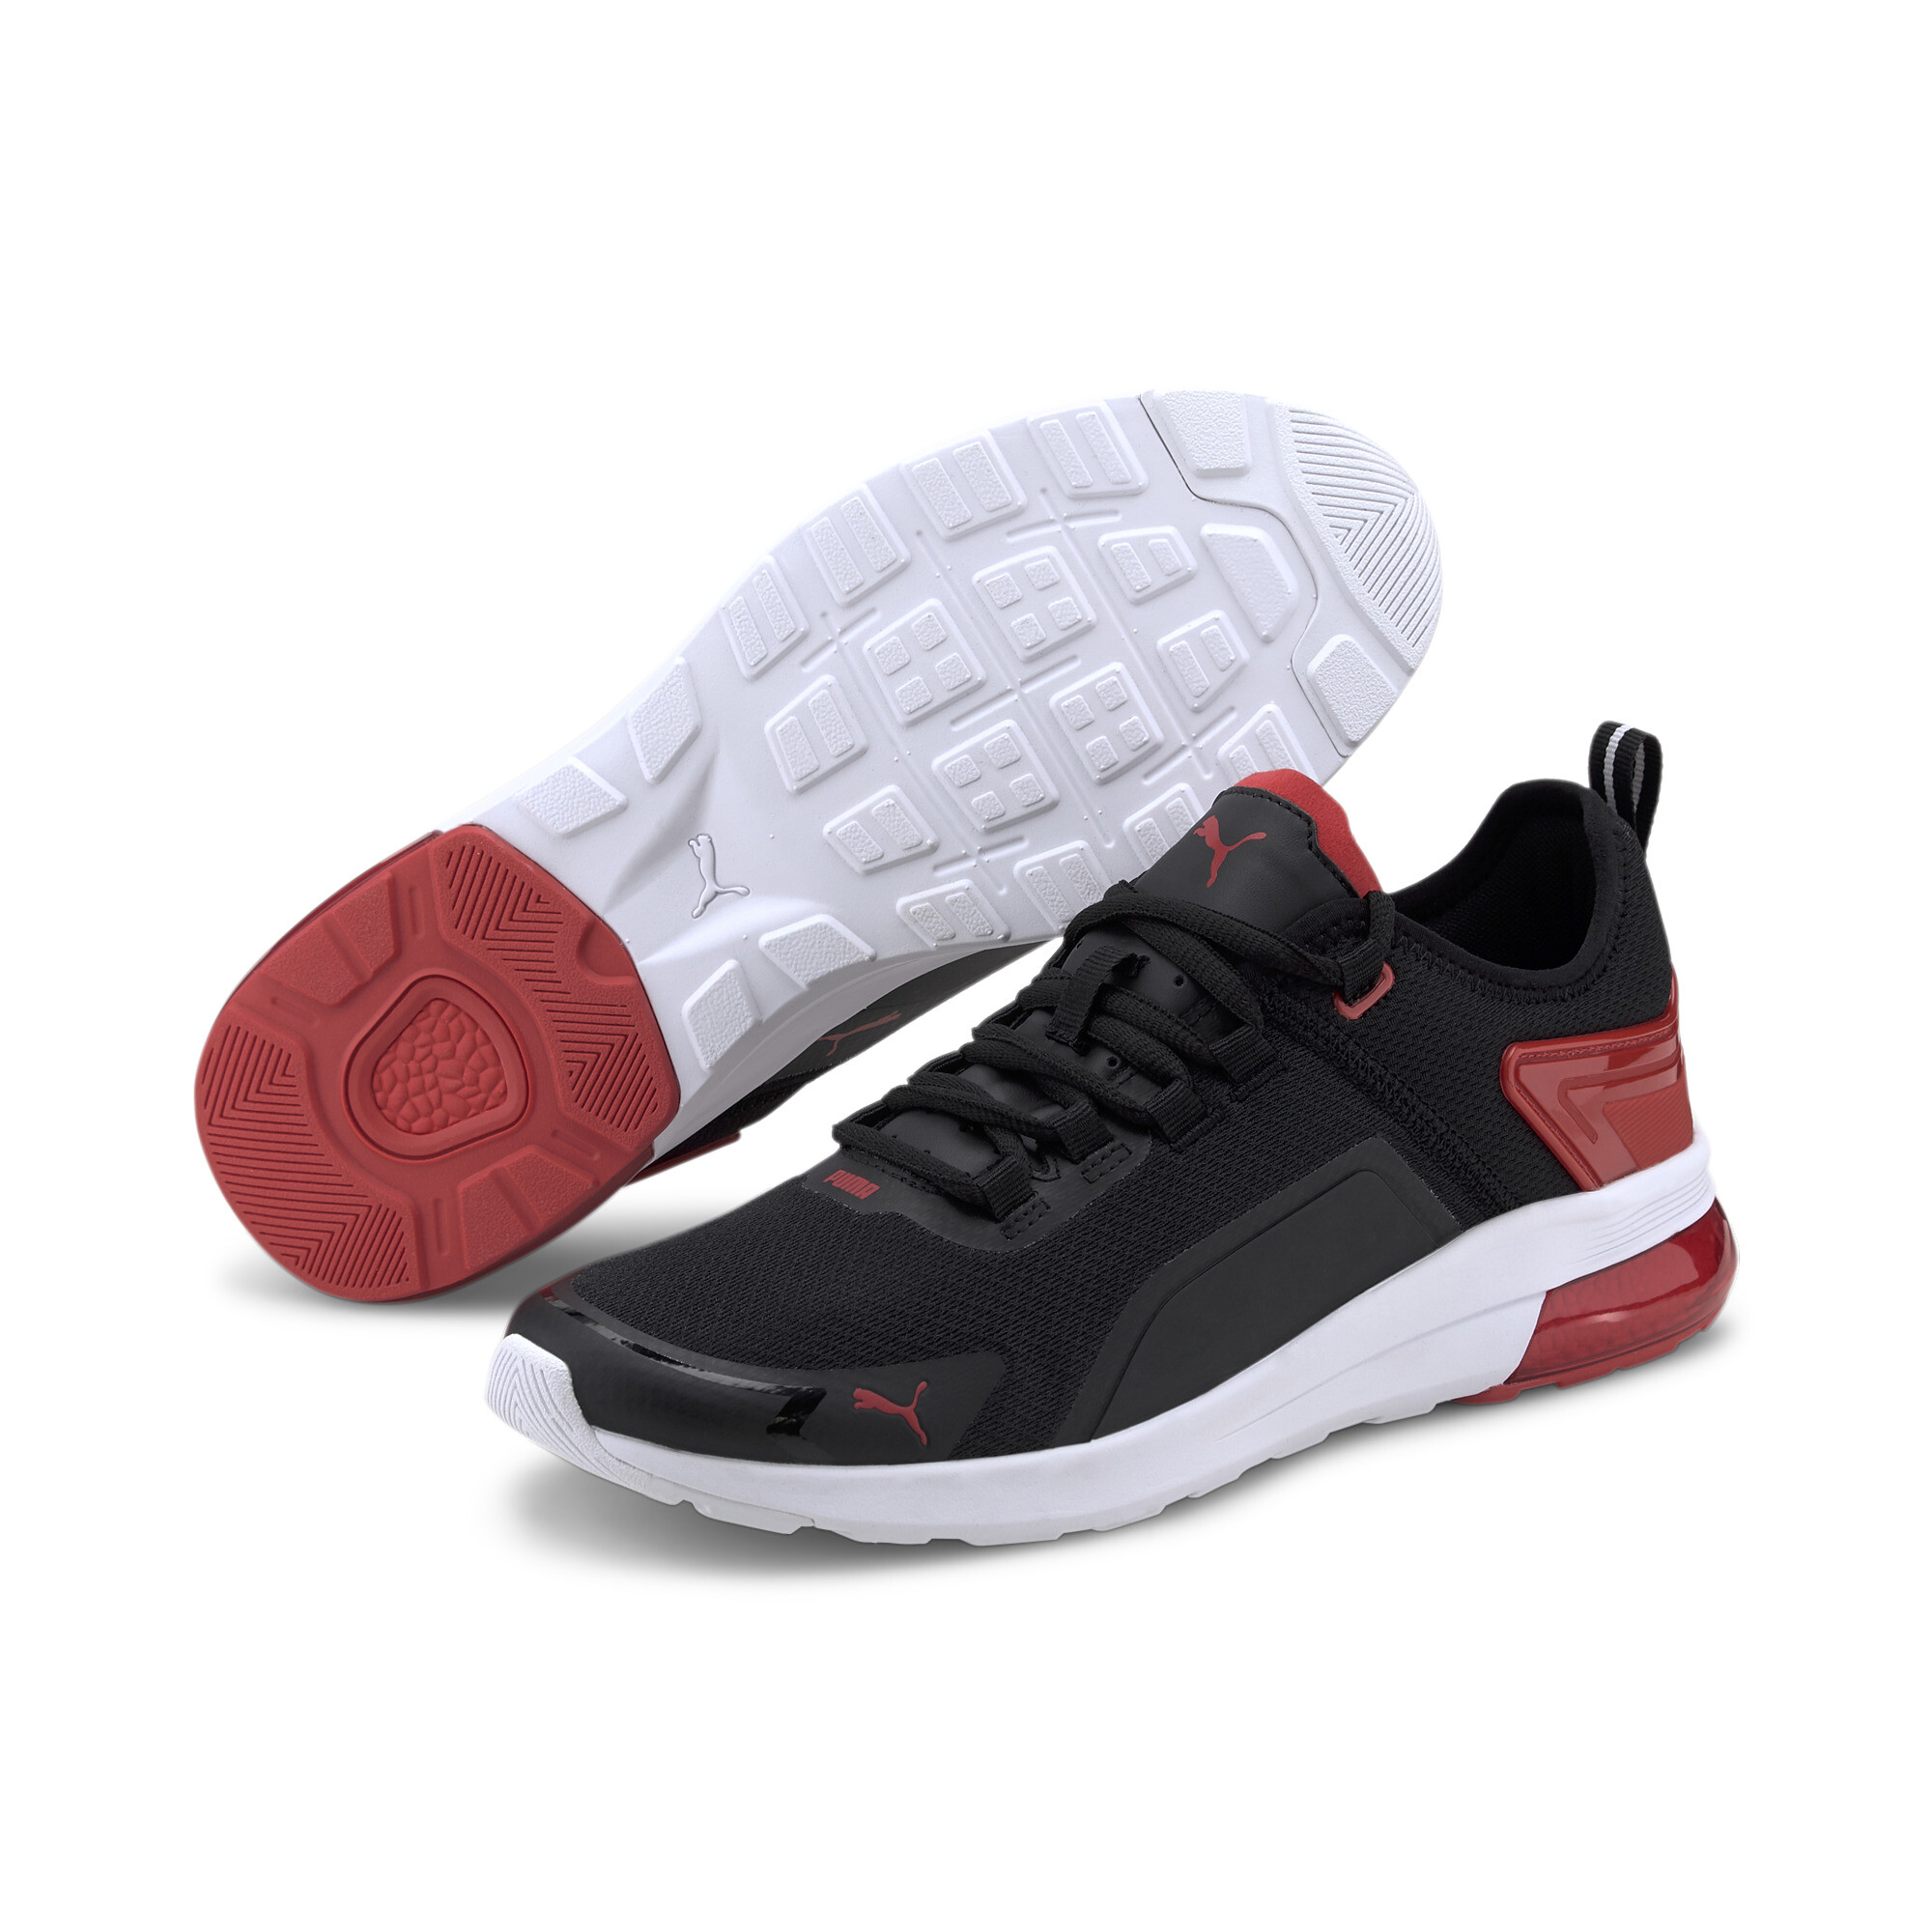 Indexbild 2 - PUMA Electron Street Era Sneaker Unisex Schuhe Basics Neu